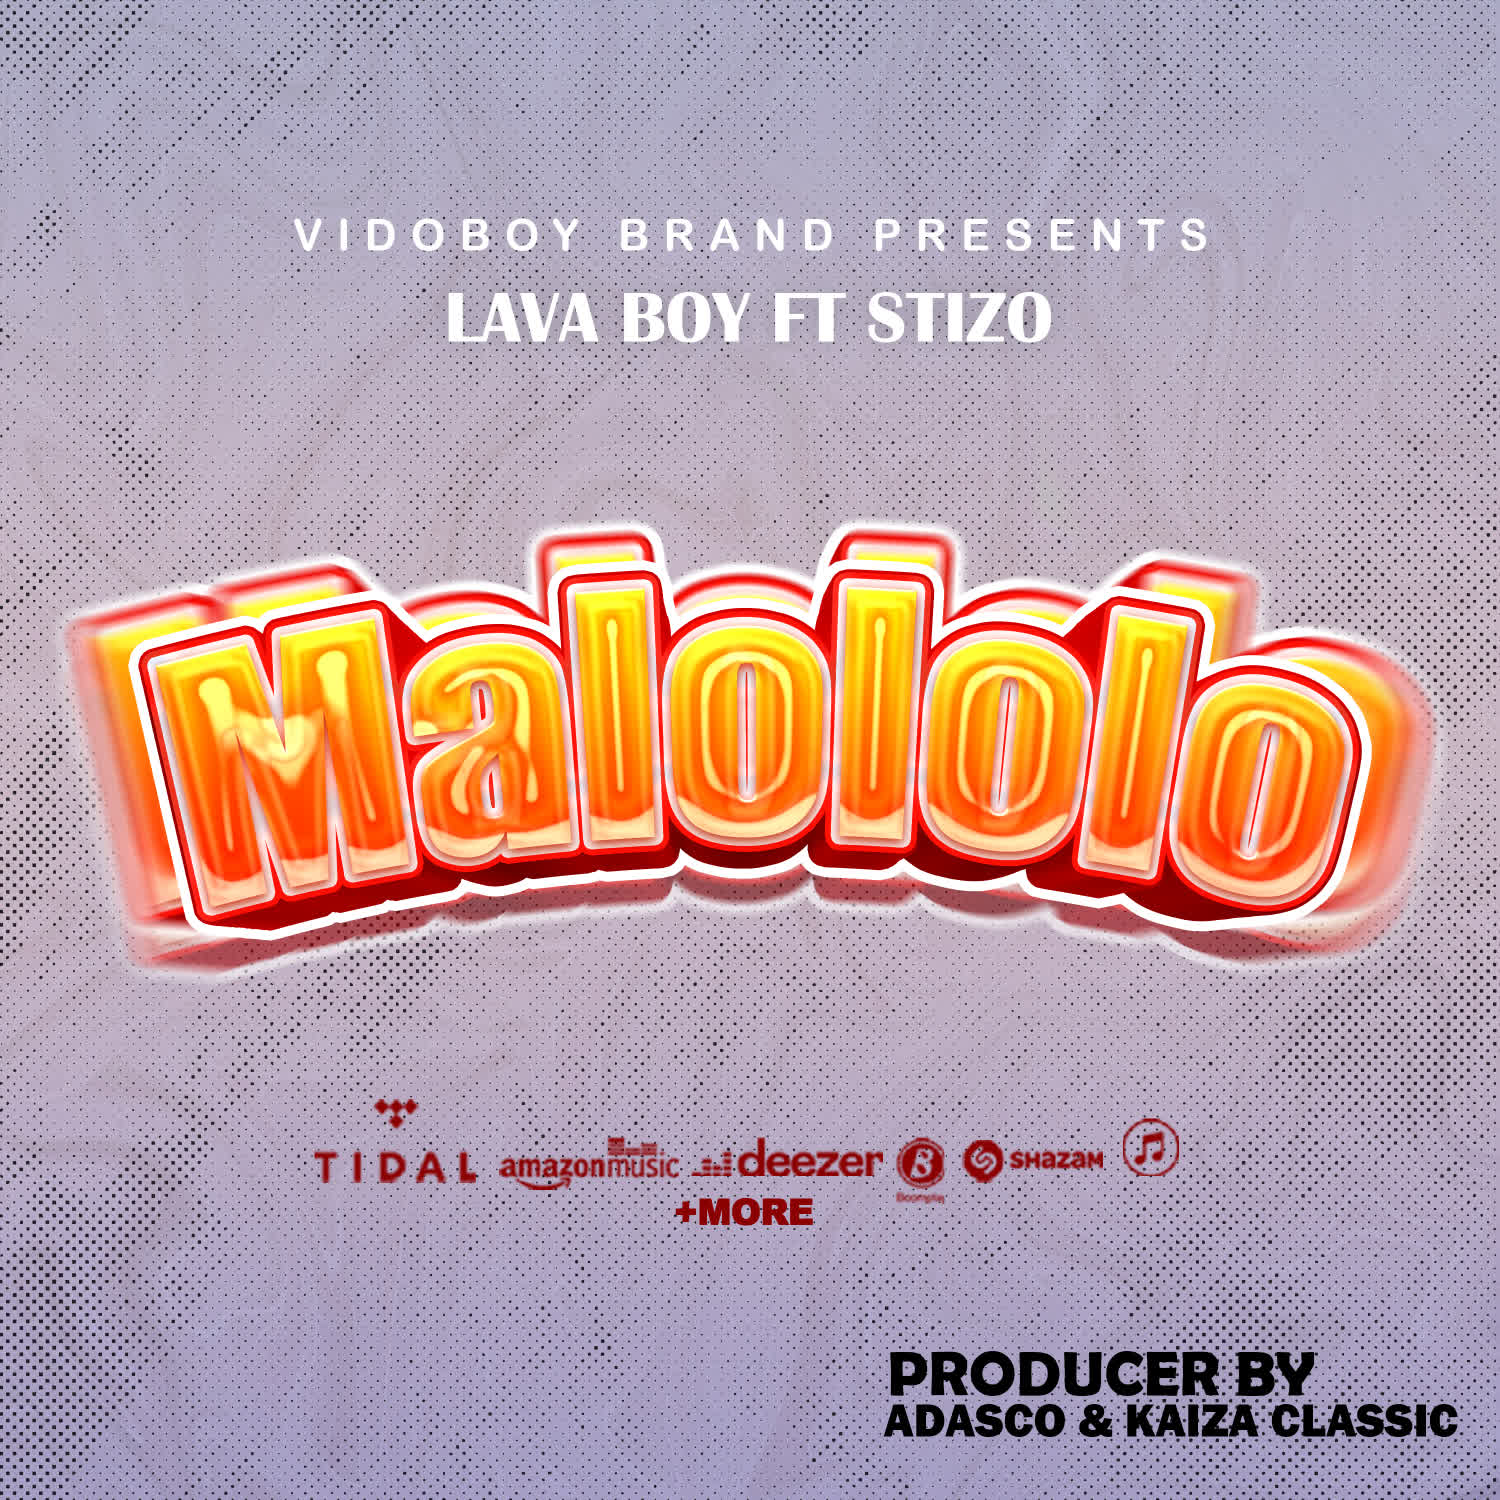 Audio |  Lava Boy Ft. Stizo – Malololo | Download MP3